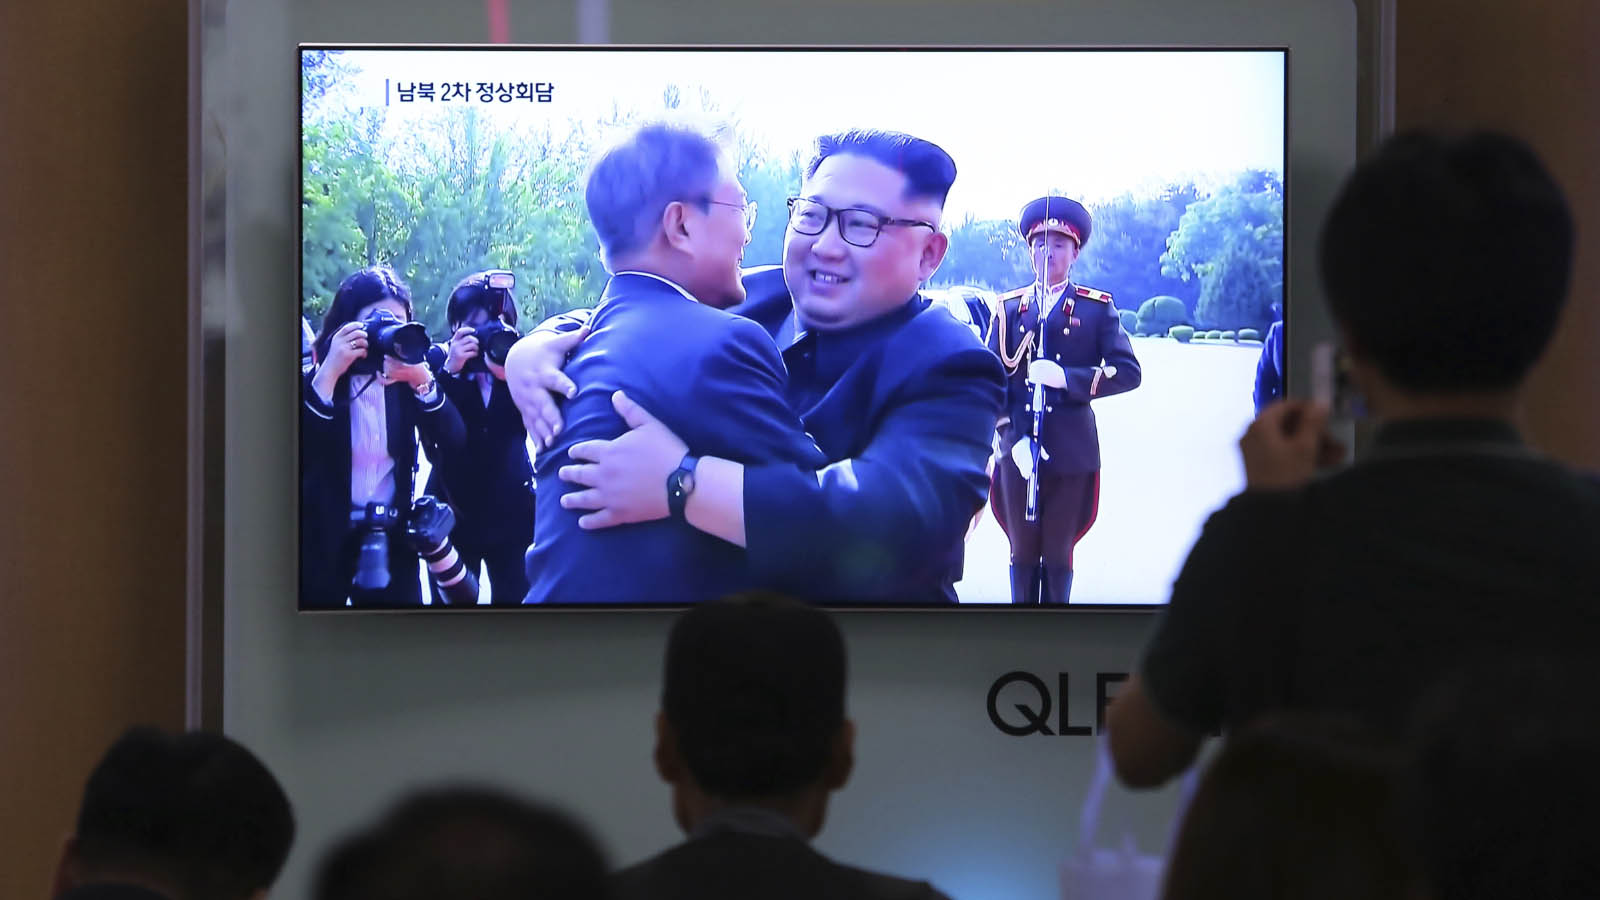 אנשים צופים בטלווזיה בפגישה של מנהיגי קוריאה הצפונית והדרומית באזור המפורז בין המדינות. 26 במאי (AP Photo/Ahn Young-joon)